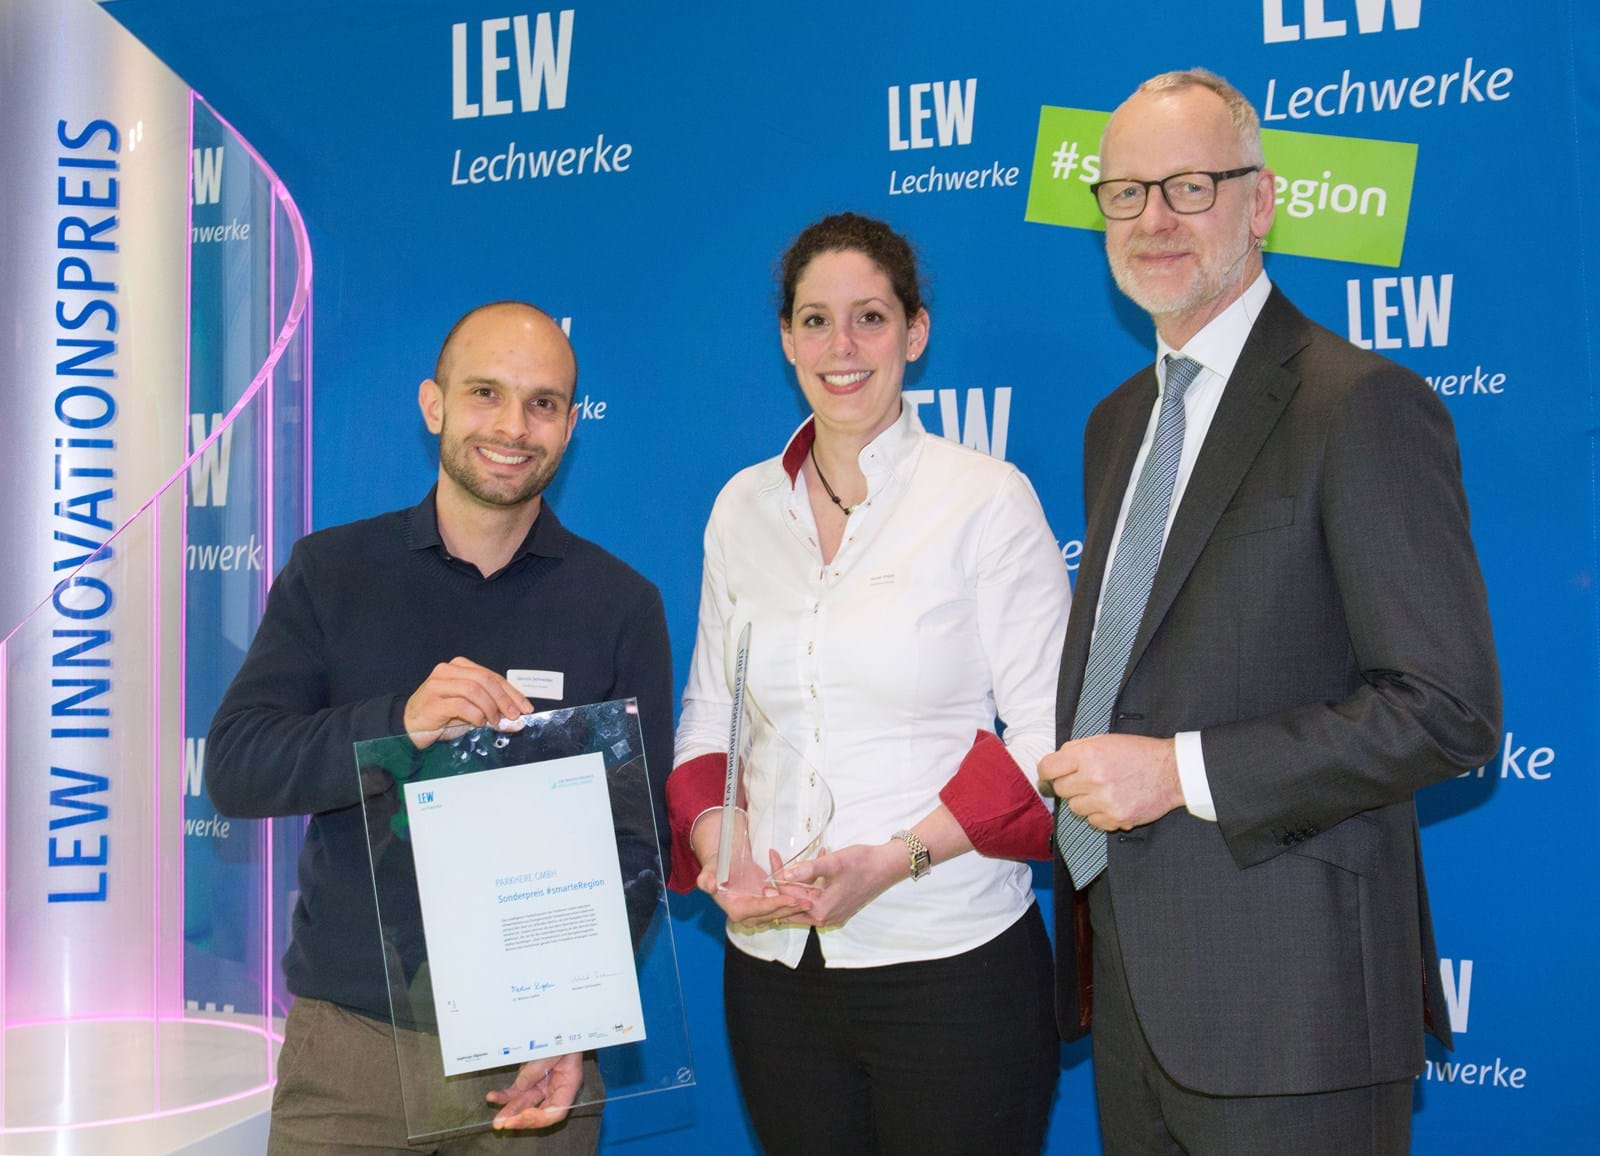 LEW-Vorstandsmitglied Dr. Markus Litpher (r.) überreicht Pokal und Urkunde für den Sonderpreis #smarteRegion an Sarah Plück und Dennis Schneider von der ParkHere GmbH.